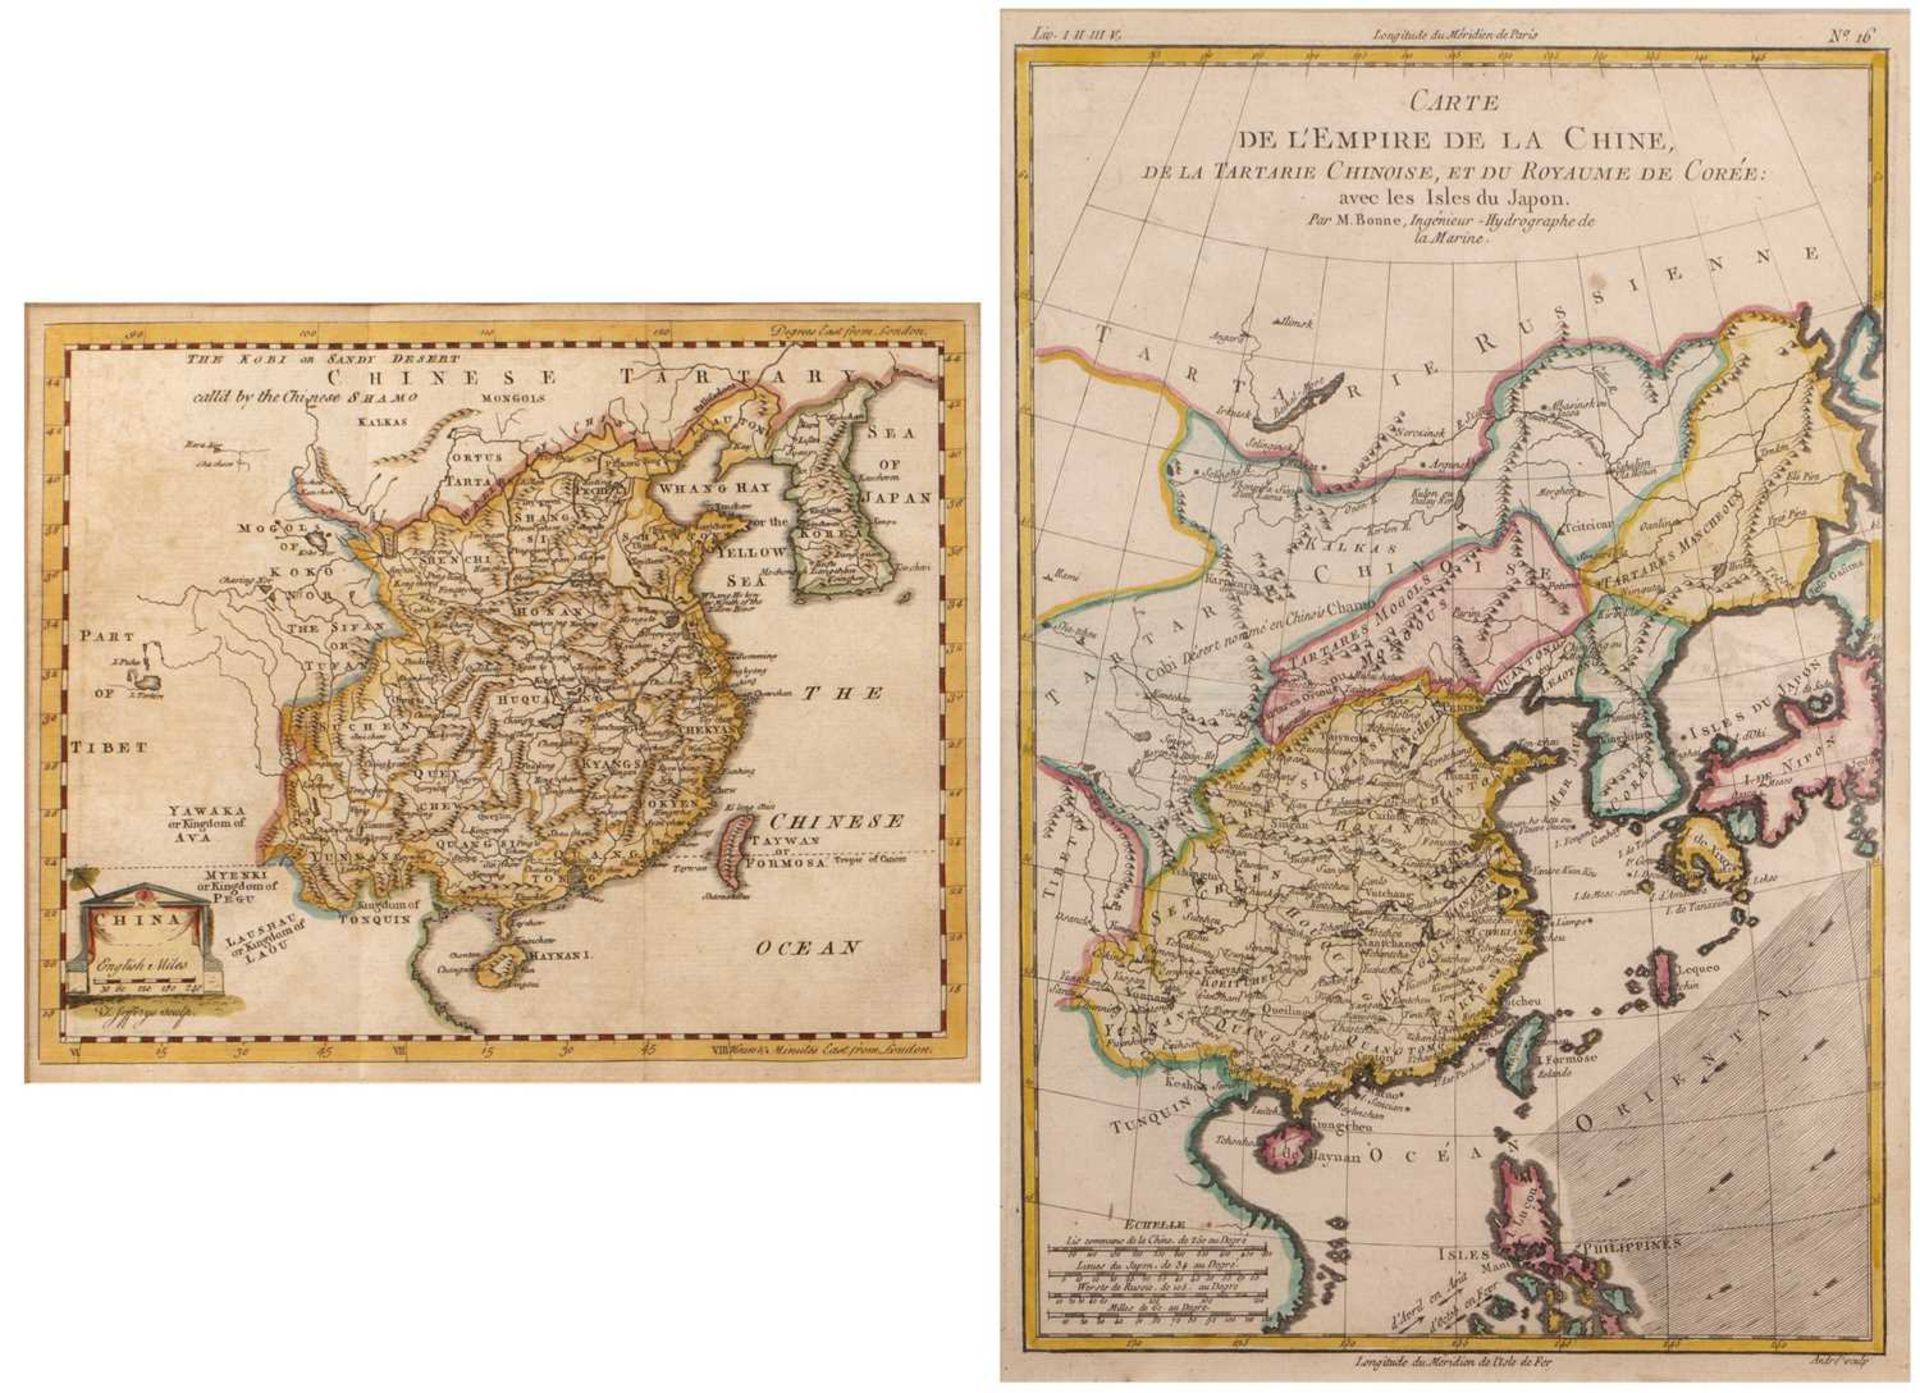 Carte (map) de l'Empire de la Chine by Rigobert Bonne (1727-1795), 33.5cm x 23cm, a further map of